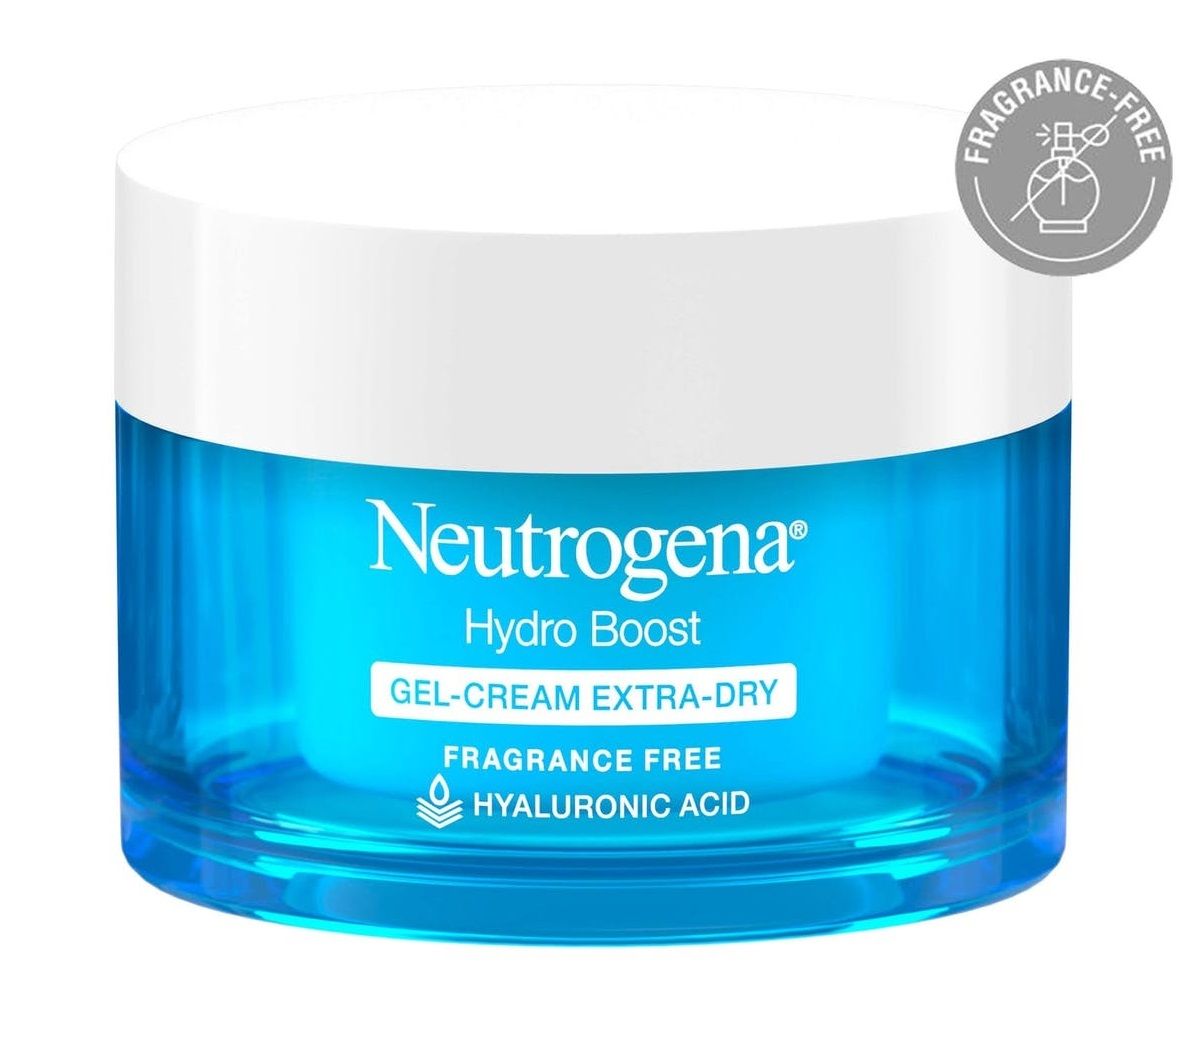 كريم مرطب نيتروجينا للبشرة الدهنية Neutrogena® Hydro Boost Gel-Cream with Hyaluronic Acid